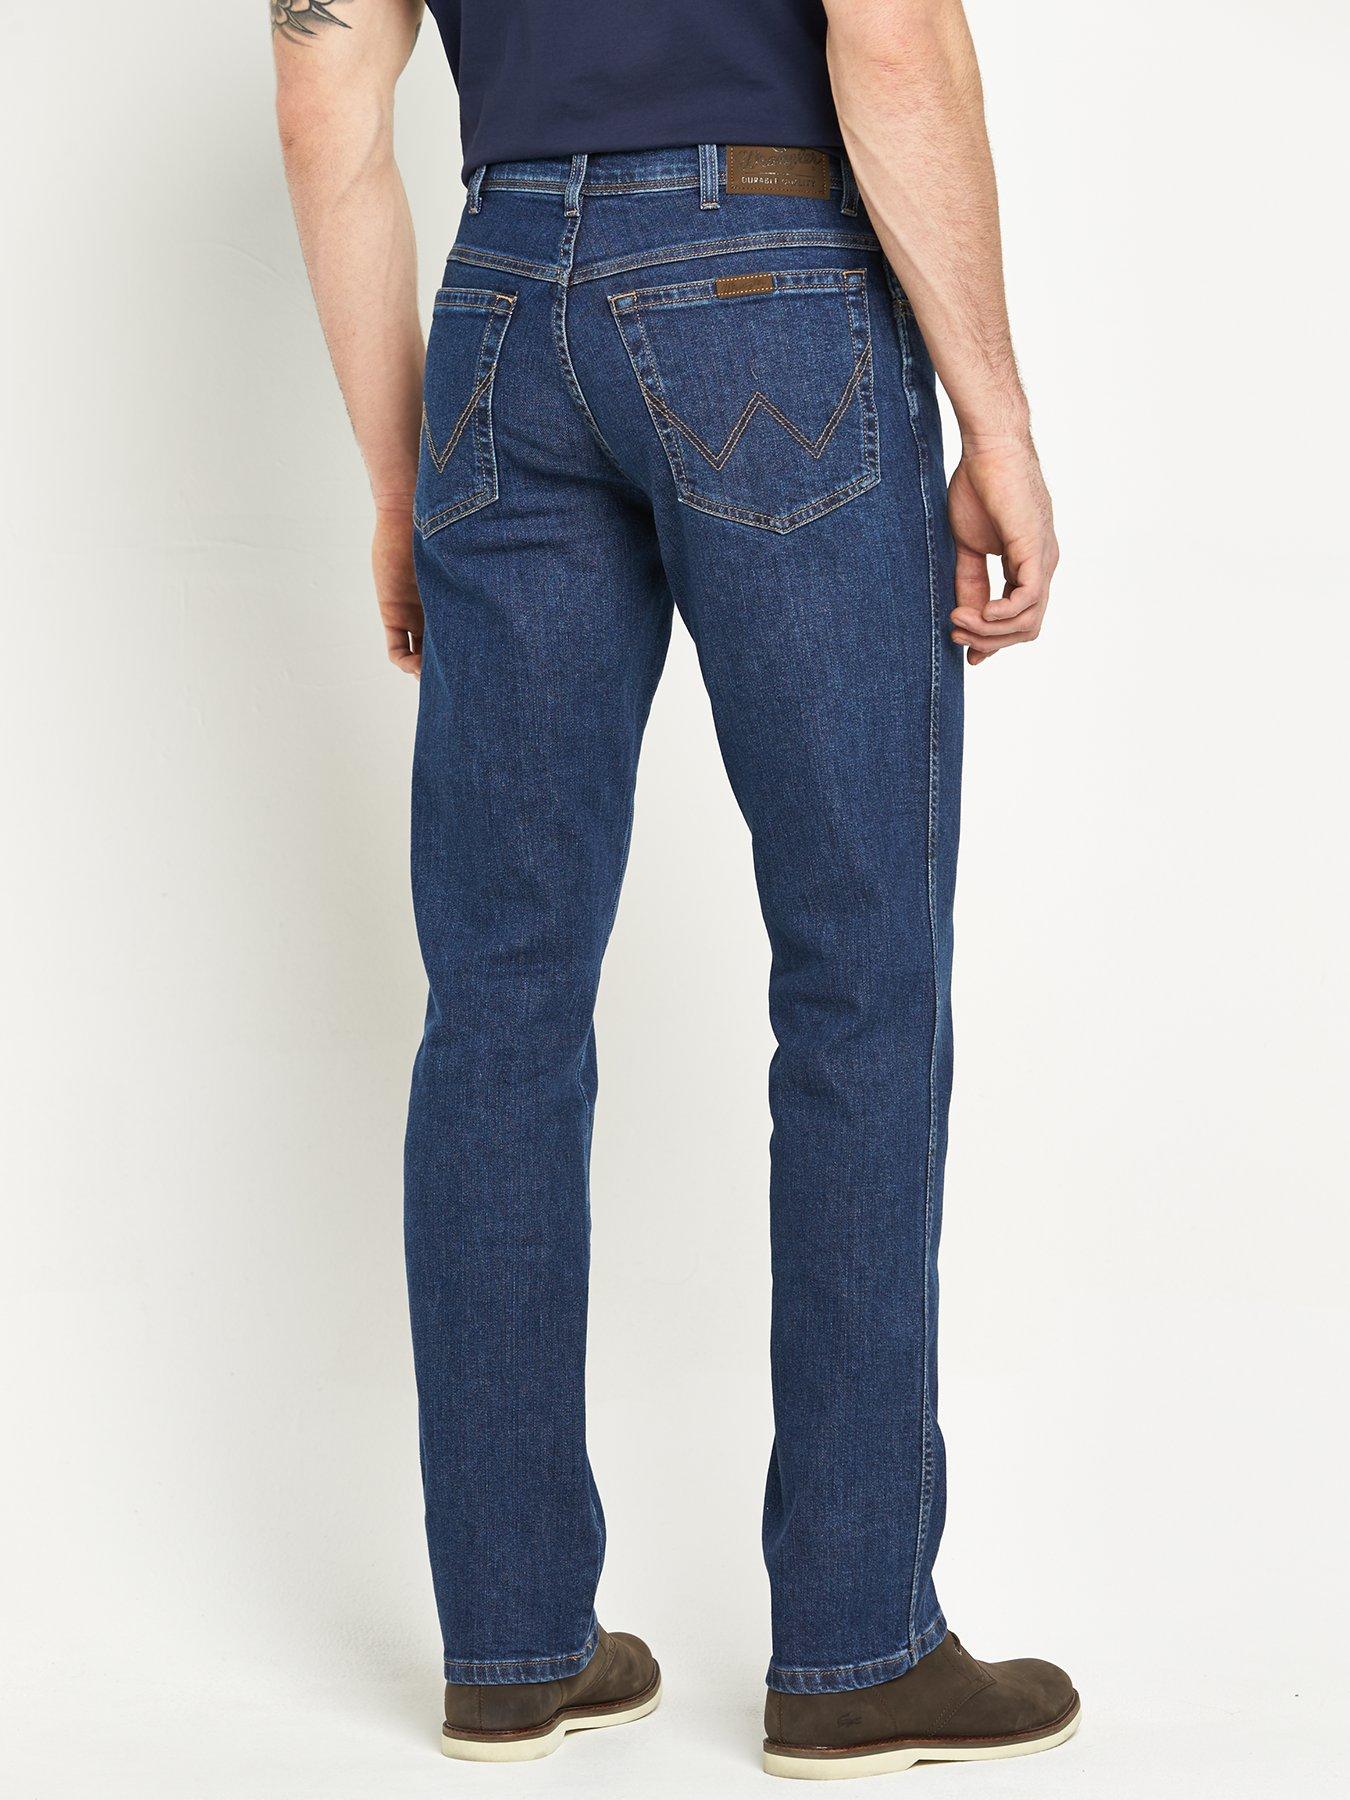 wrangler durable jeans